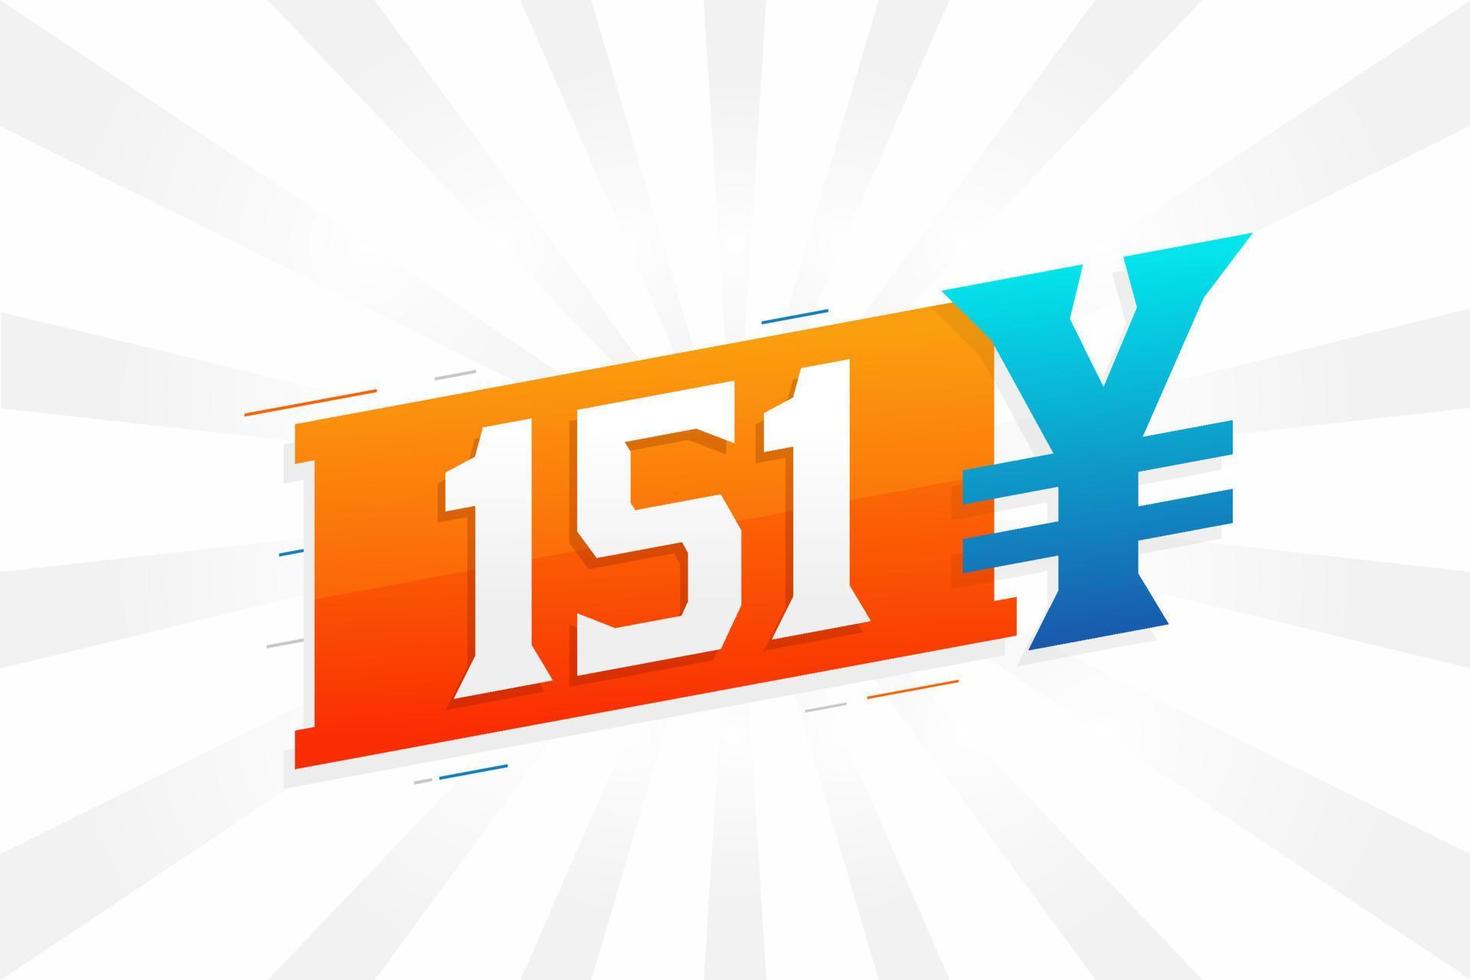 Símbolo de texto de vetor de moeda chinesa de 151 yuan. Vetor de estoque de dinheiro de moeda japonesa de 151 ienes